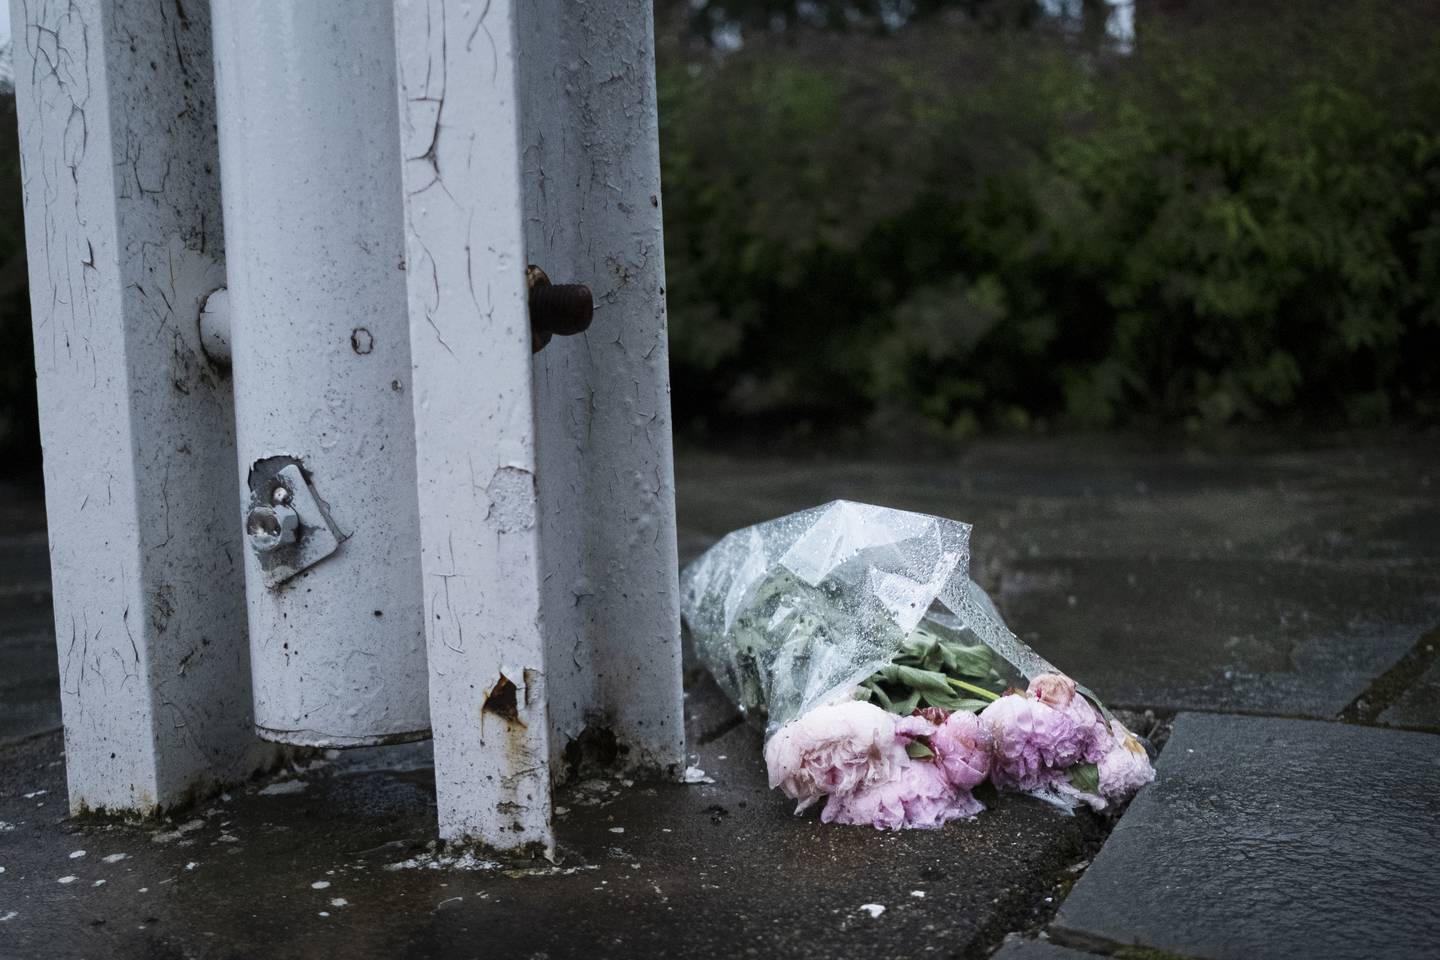 Ved flaggstanga hadde noen lagt med en bukett blomster til minne om de drepte.